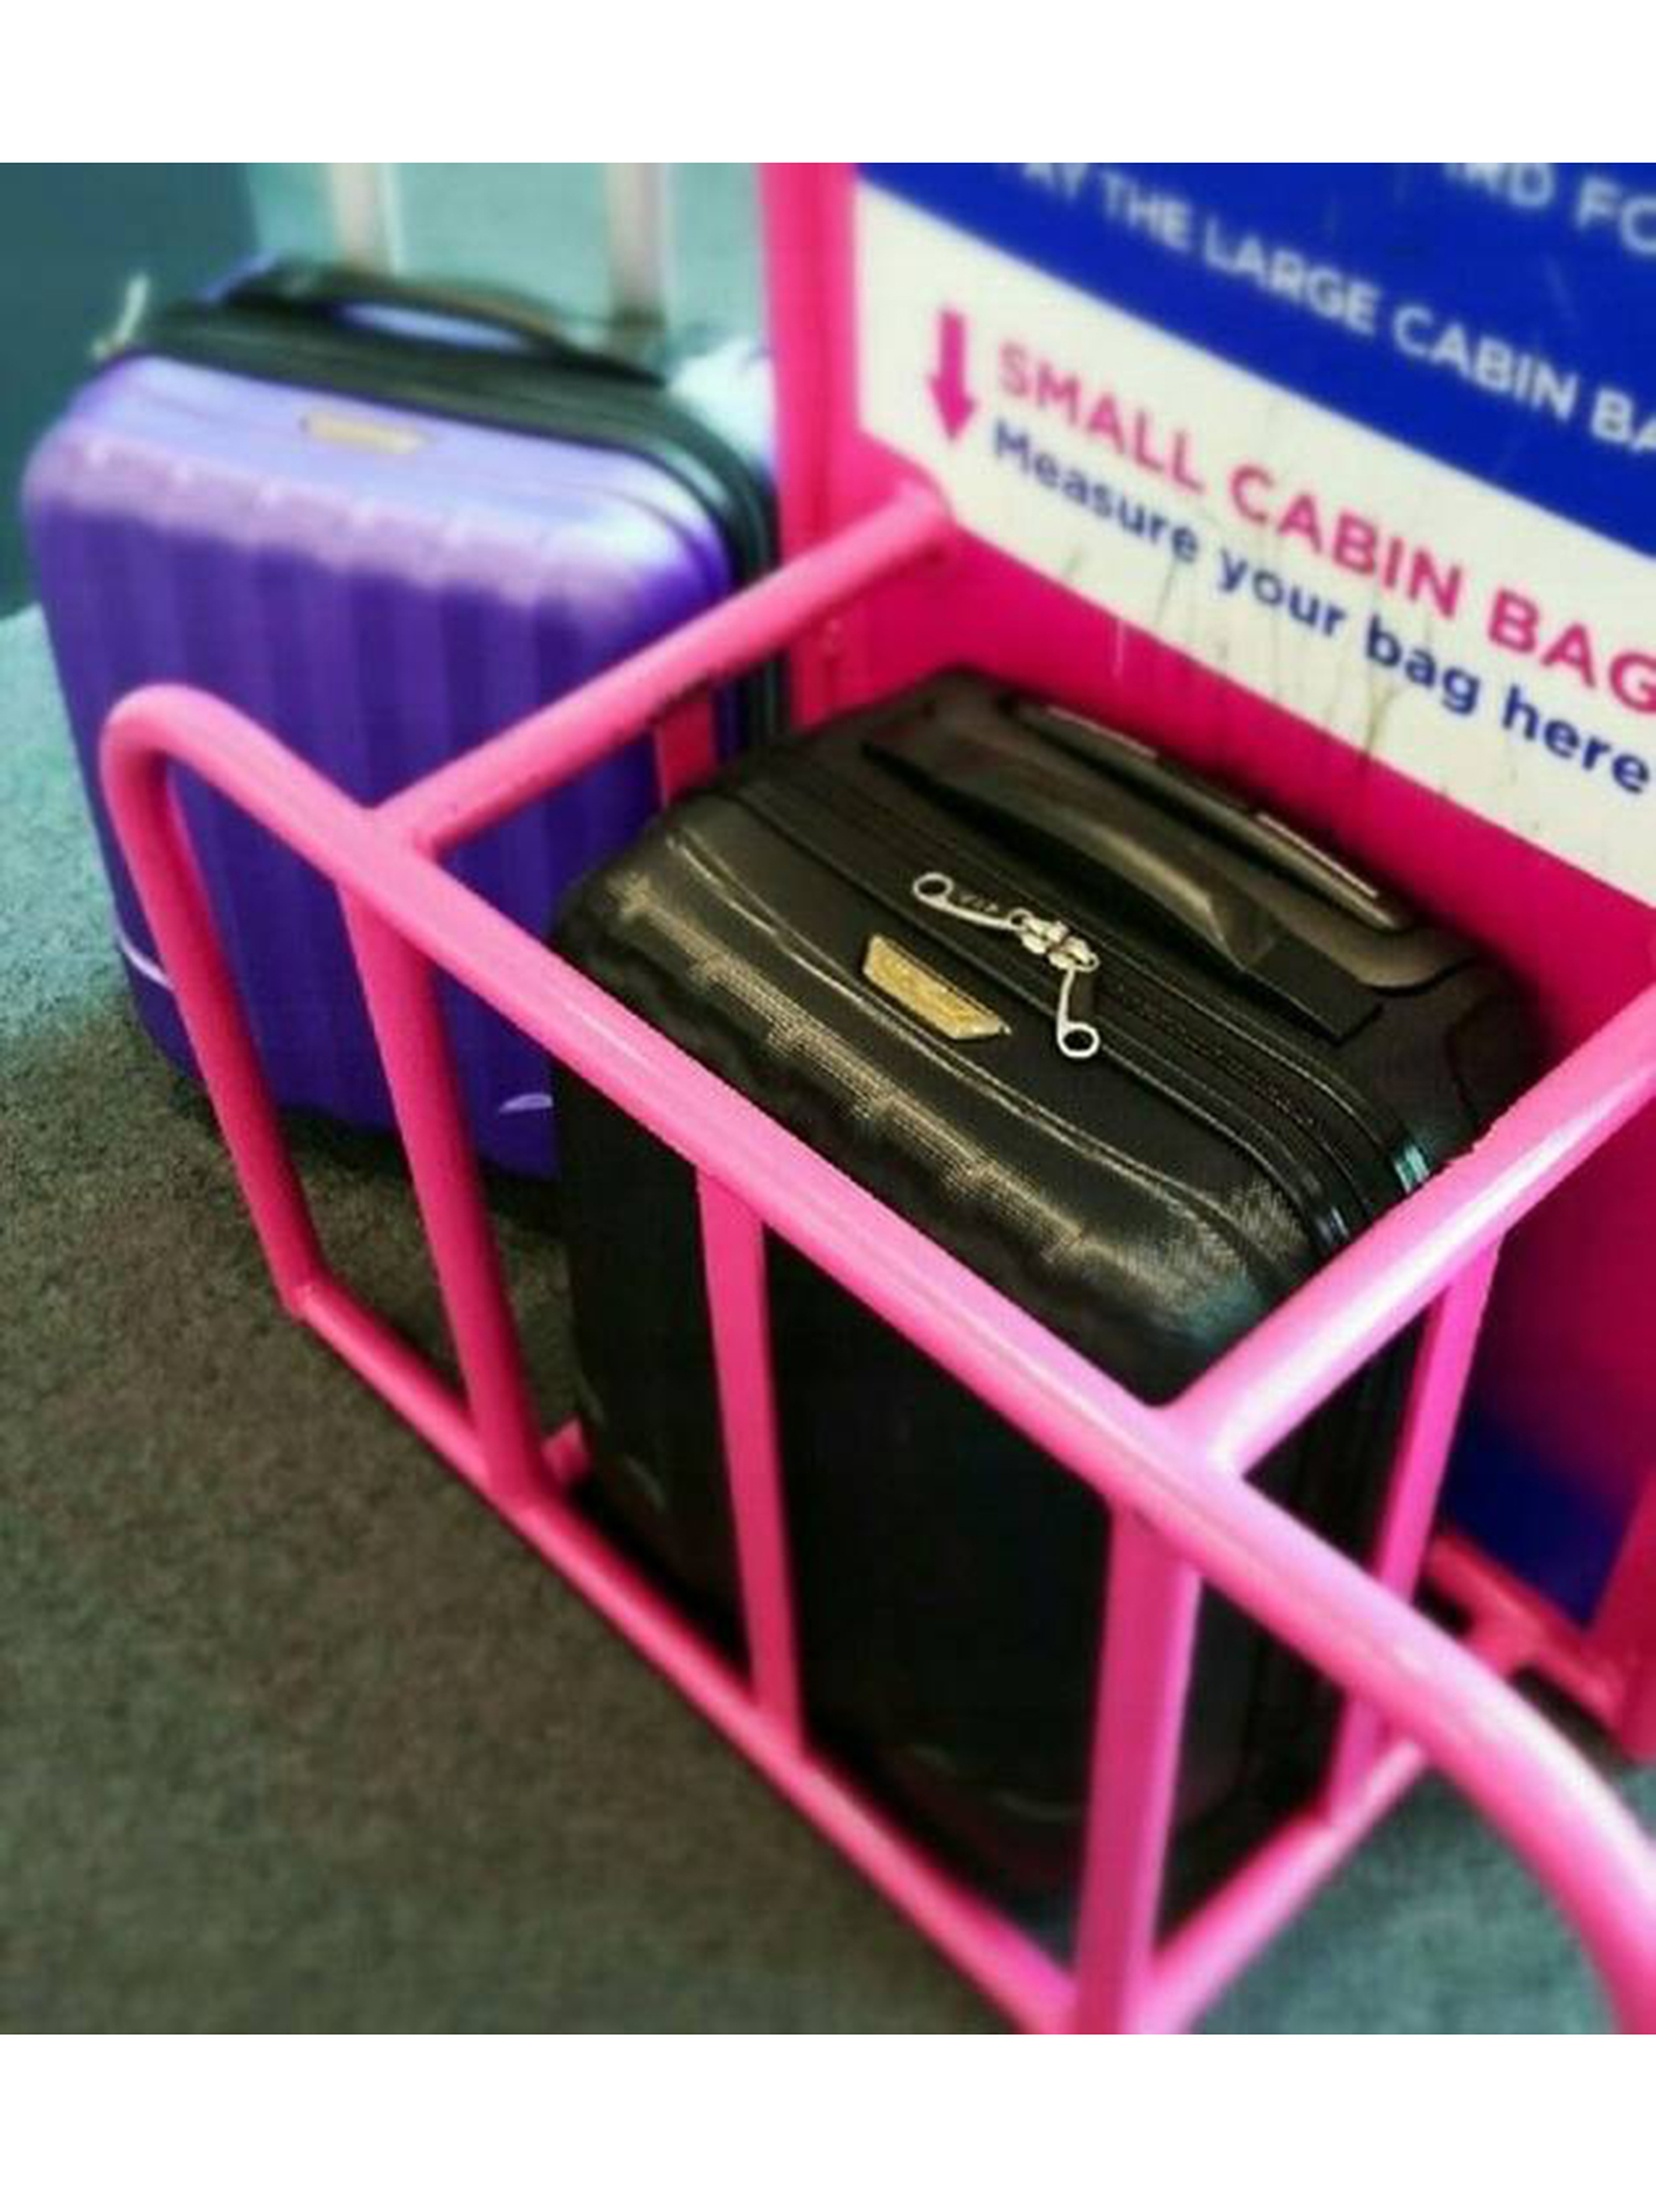 Torba na bagaż podręczny do samolotu — Peterson unisex z portem USB